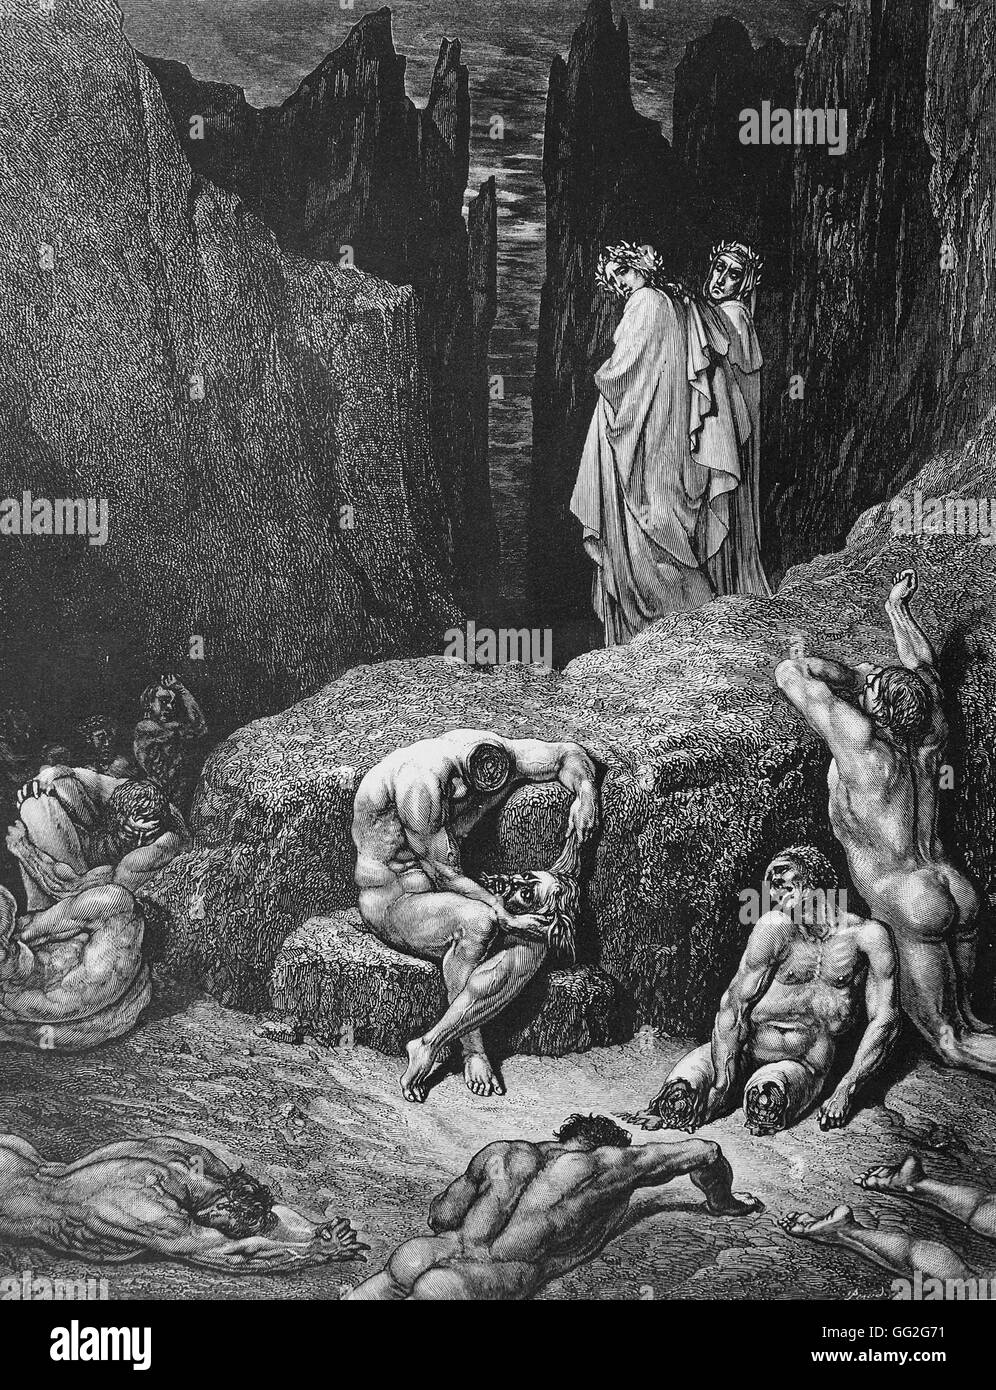 Gustave Doré scuola francese mutilate uomini illustrazione dell'Inferno, la prima parte di Dante Alighieri nella Divina Commedia incisione su legno (24 x 19 cm) Collezione privata Foto Stock